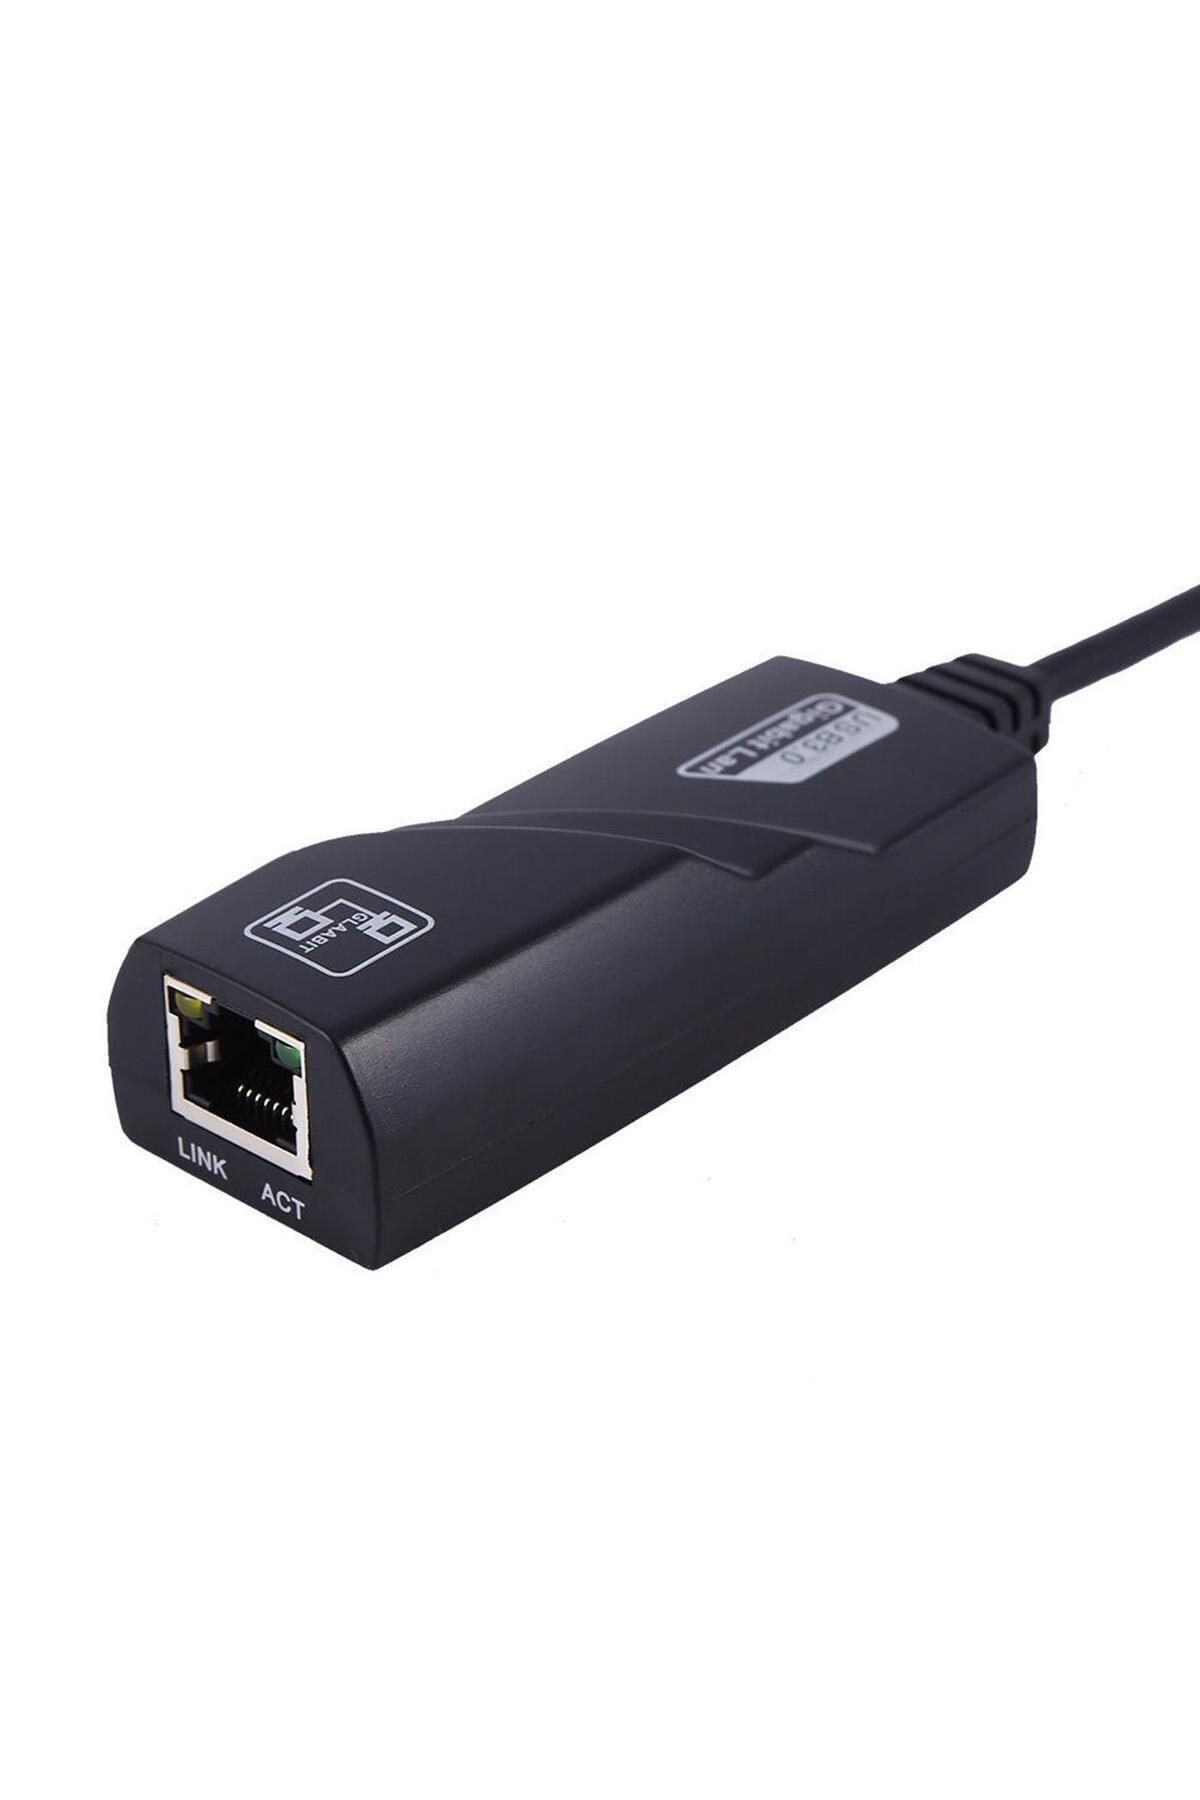 ZRH USB 3.0 To Ethernet RJ45 Adaptörü Gigabit 10/100/1000MBPS Çevirici Dönüştürücü USB Dönüştürücü